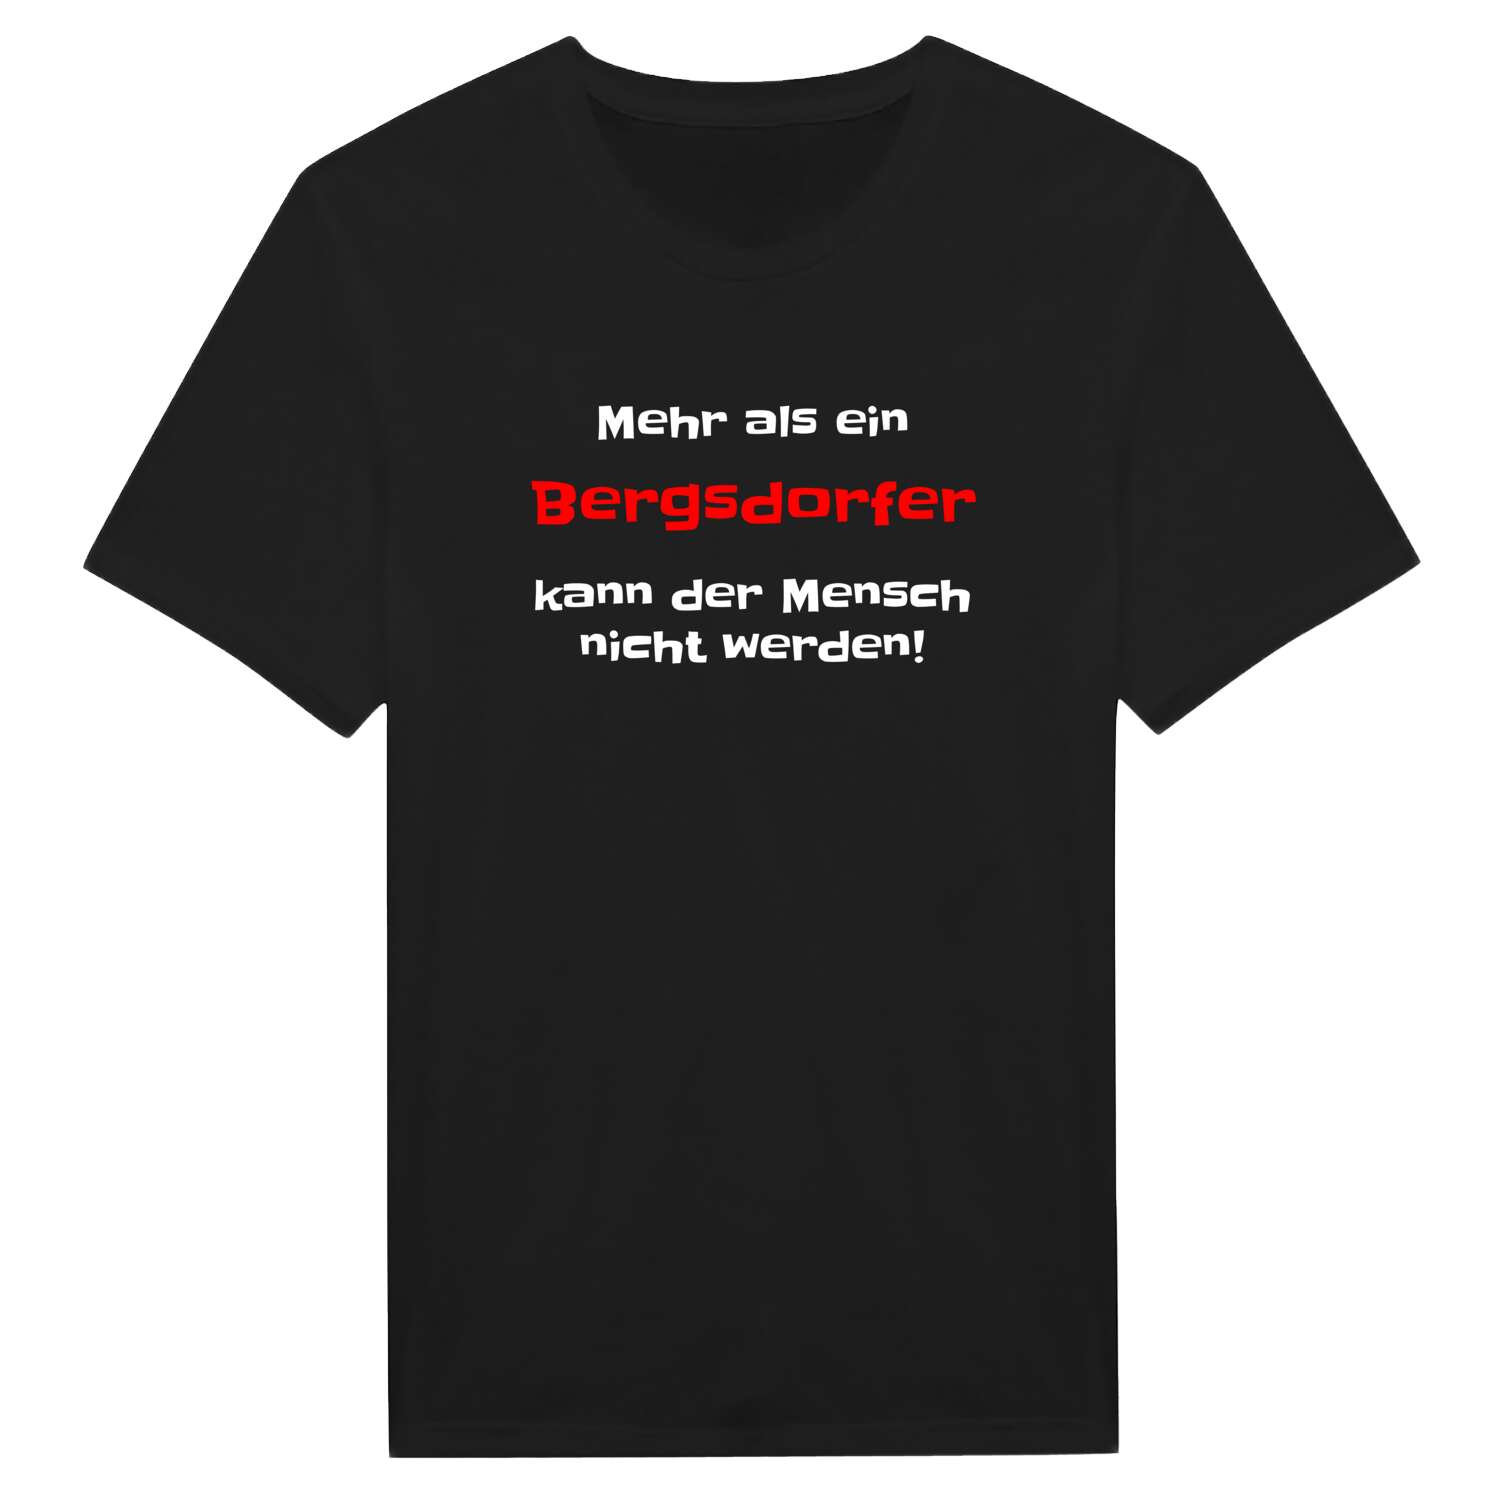 Bergsdorf T-Shirt »Mehr als ein«